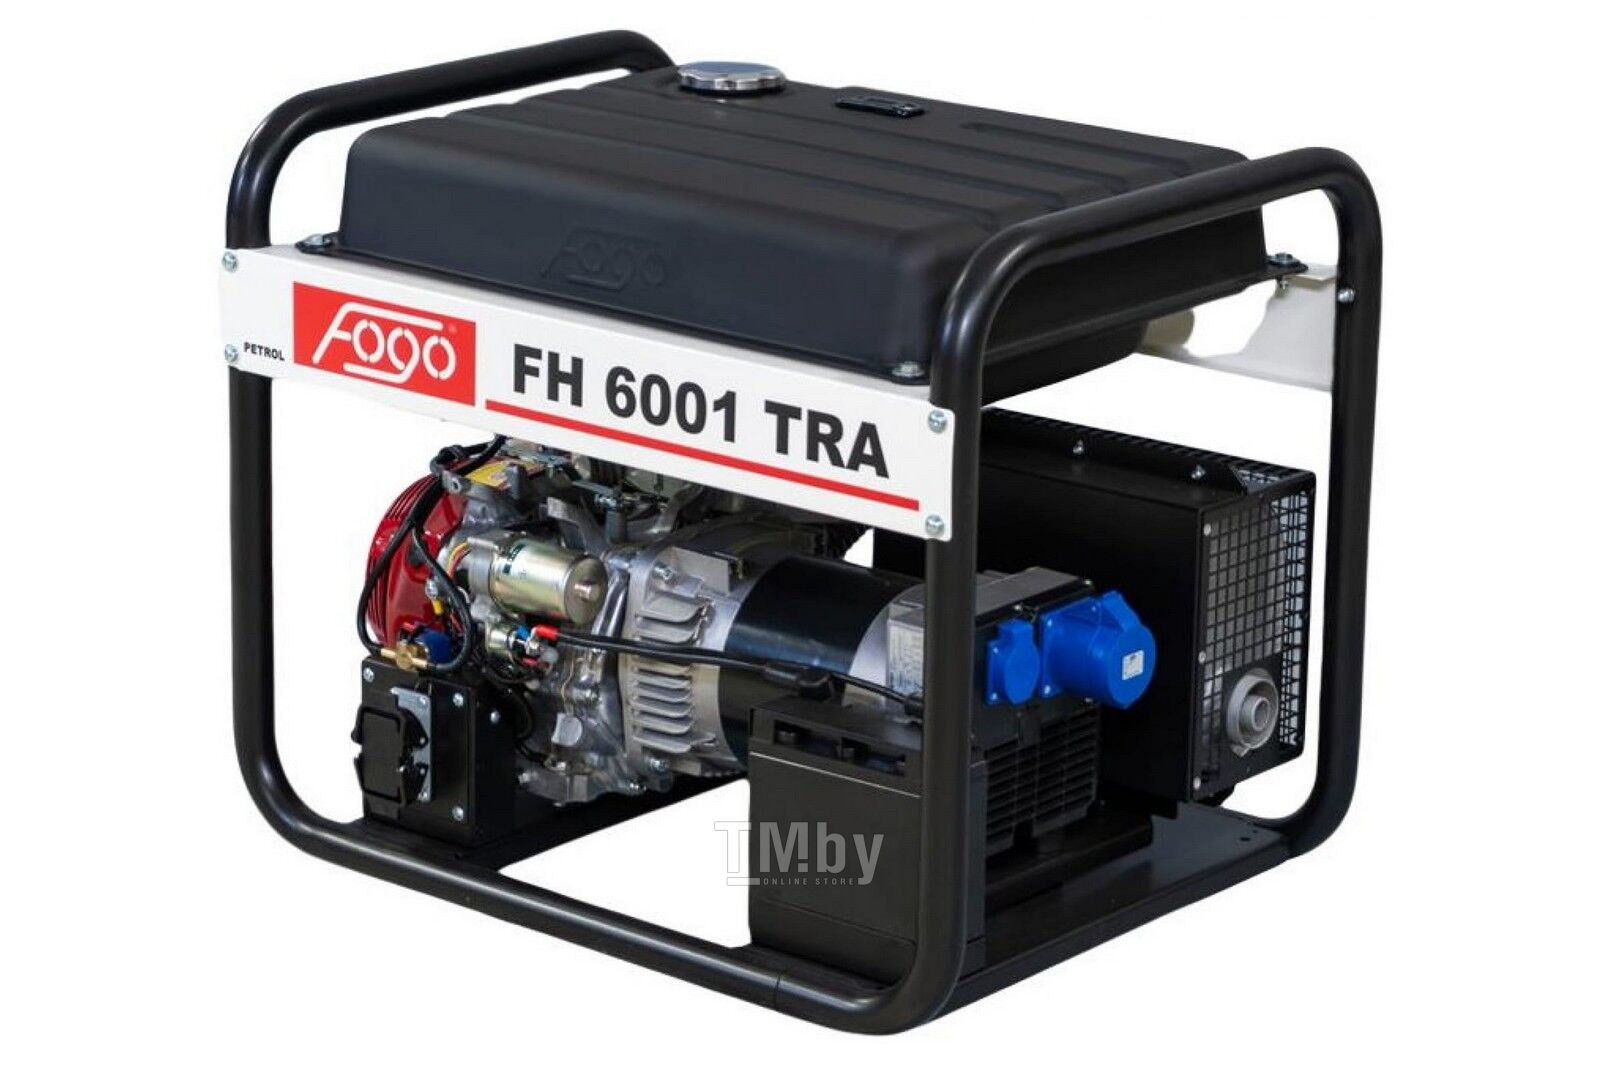 Купить бензогенератор 5,6 кВт GX390 FOGO FH 6001 TRA в Минске — TM.by